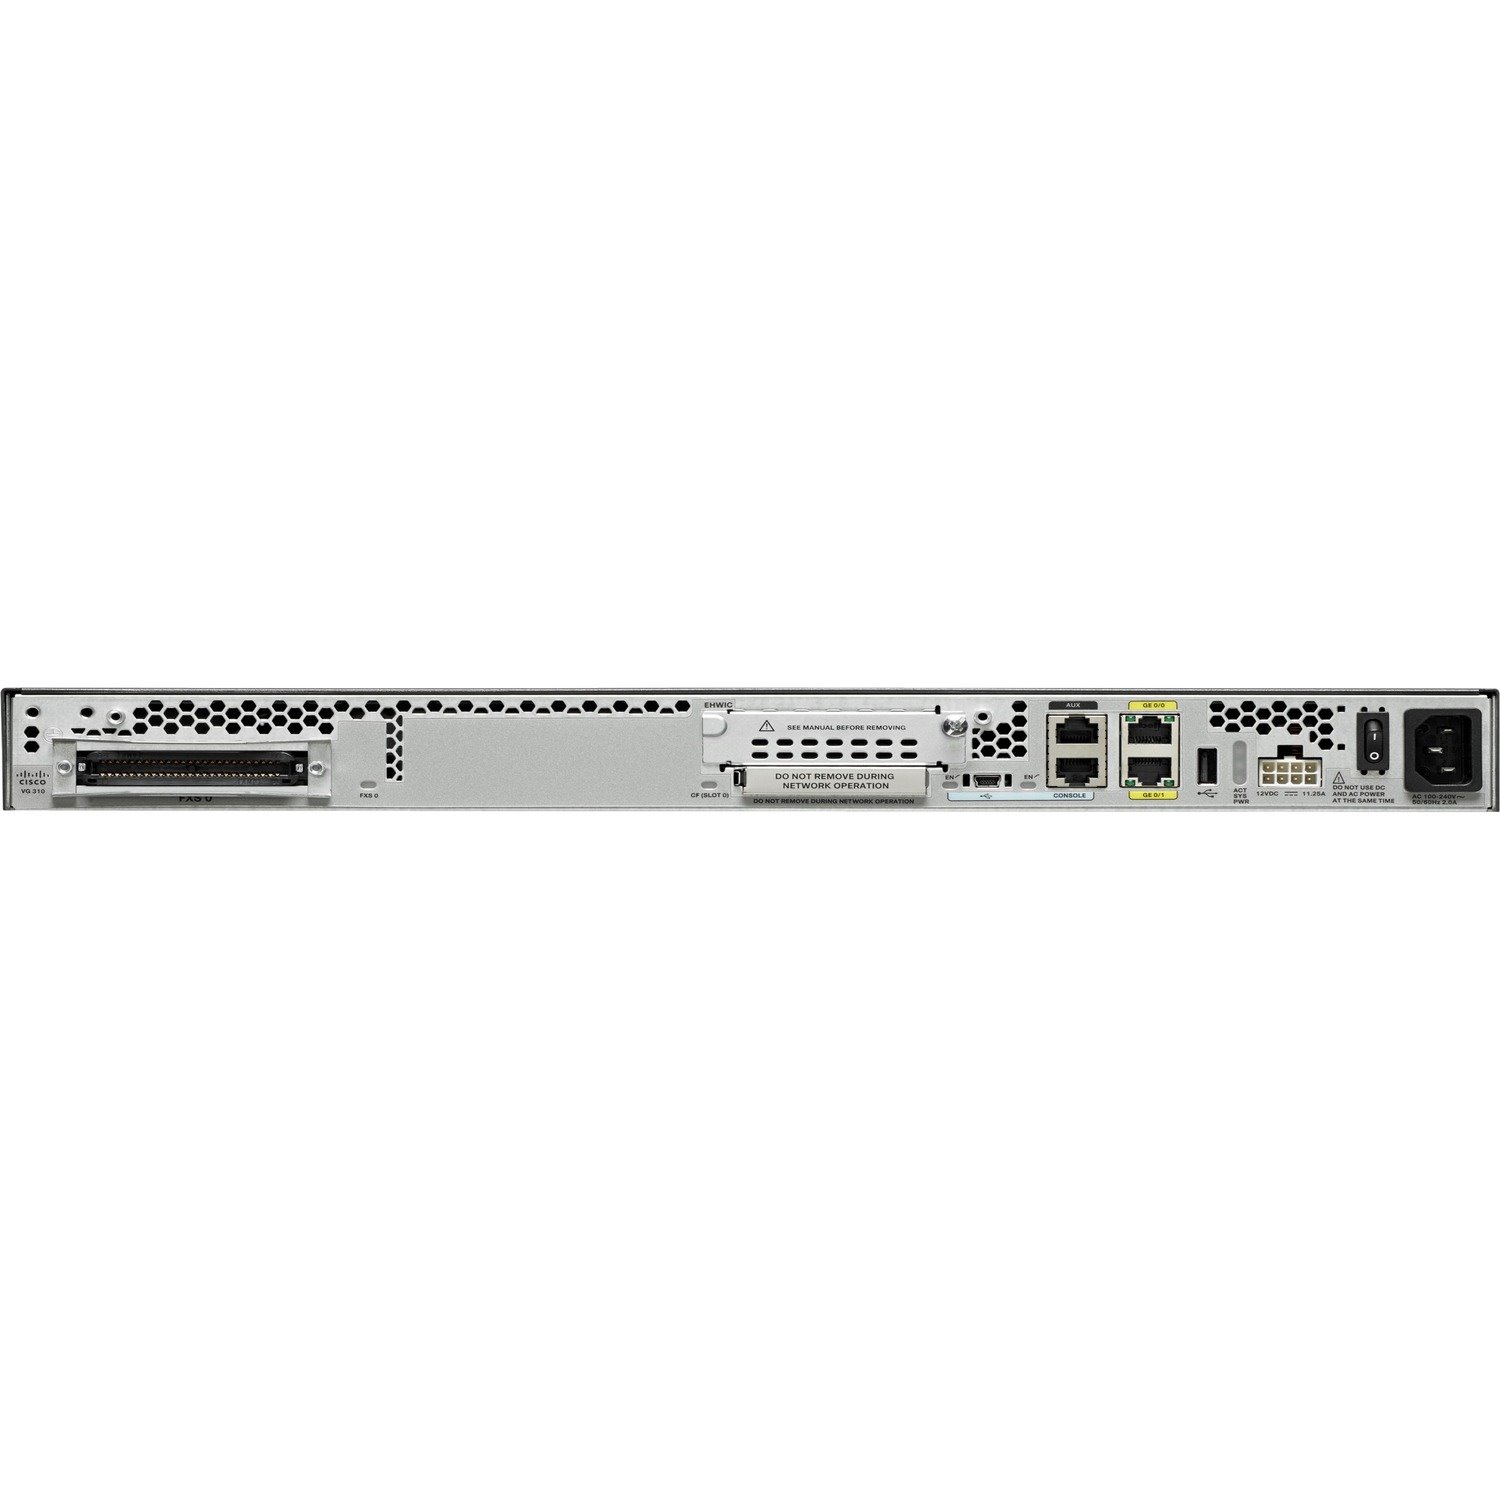 Cisco VG310 VoIP Gateway - Refurbished